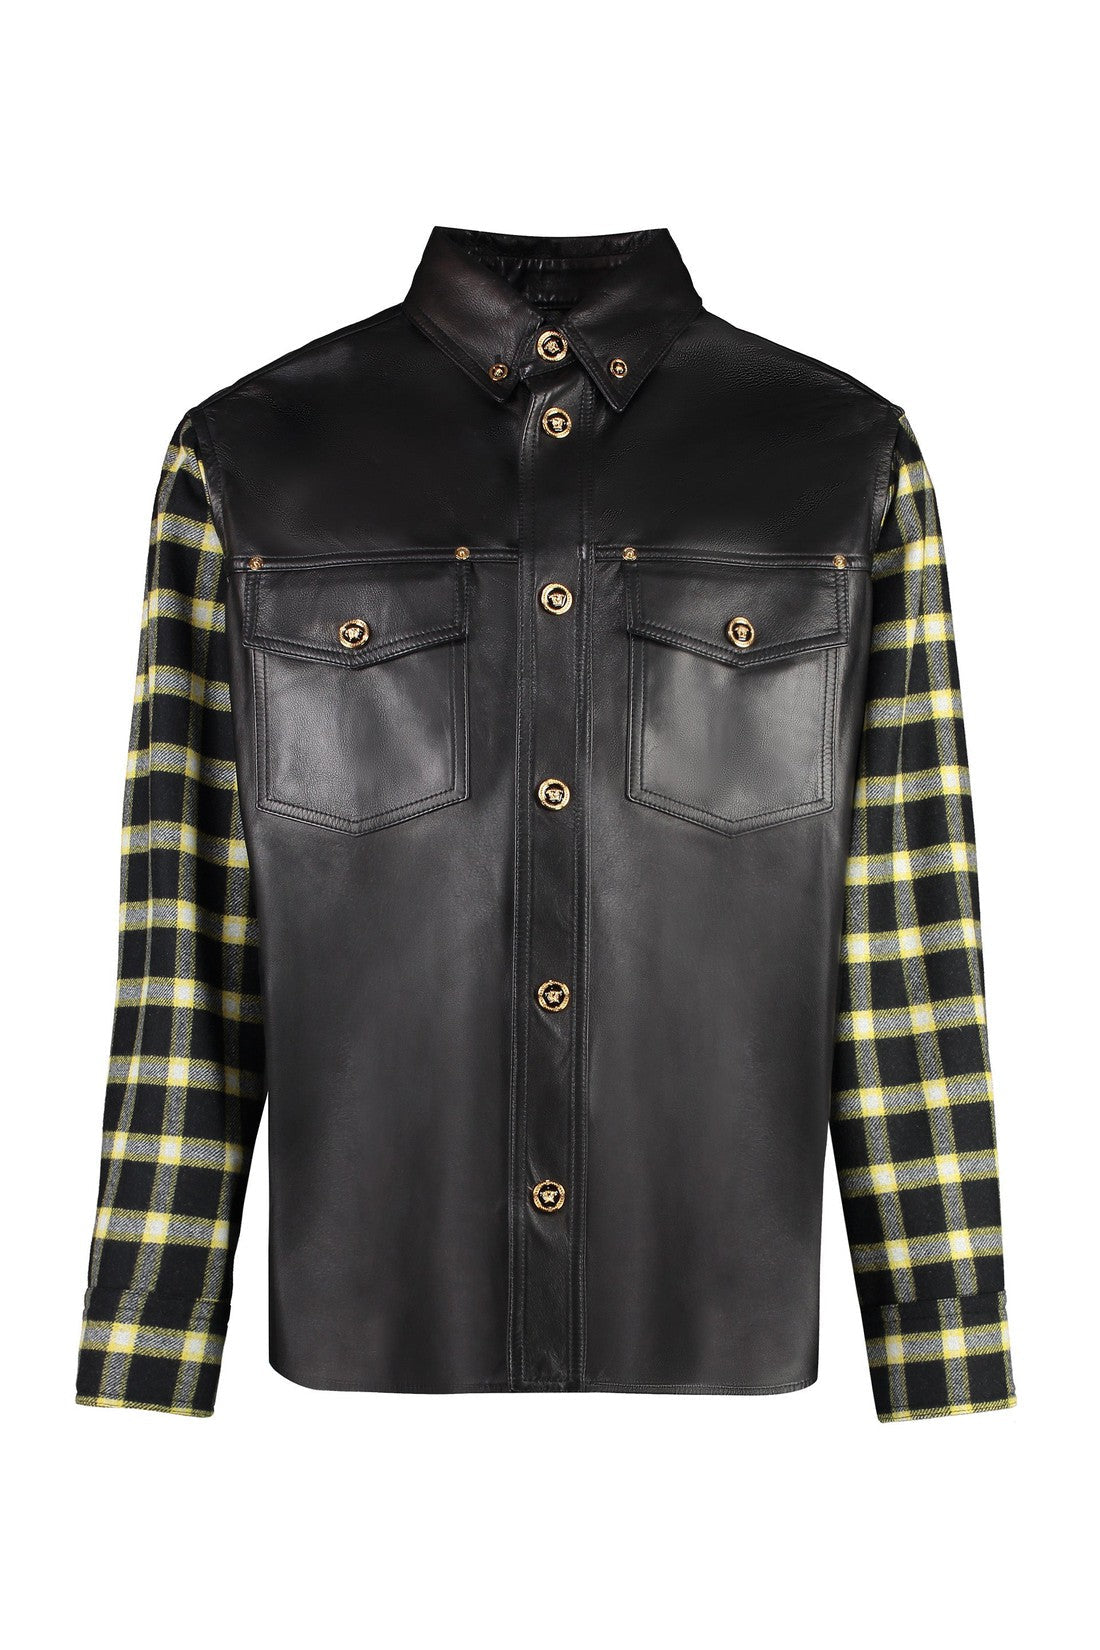 Versace-OUTLET-SALE-Leather shirt-ARCHIVIST